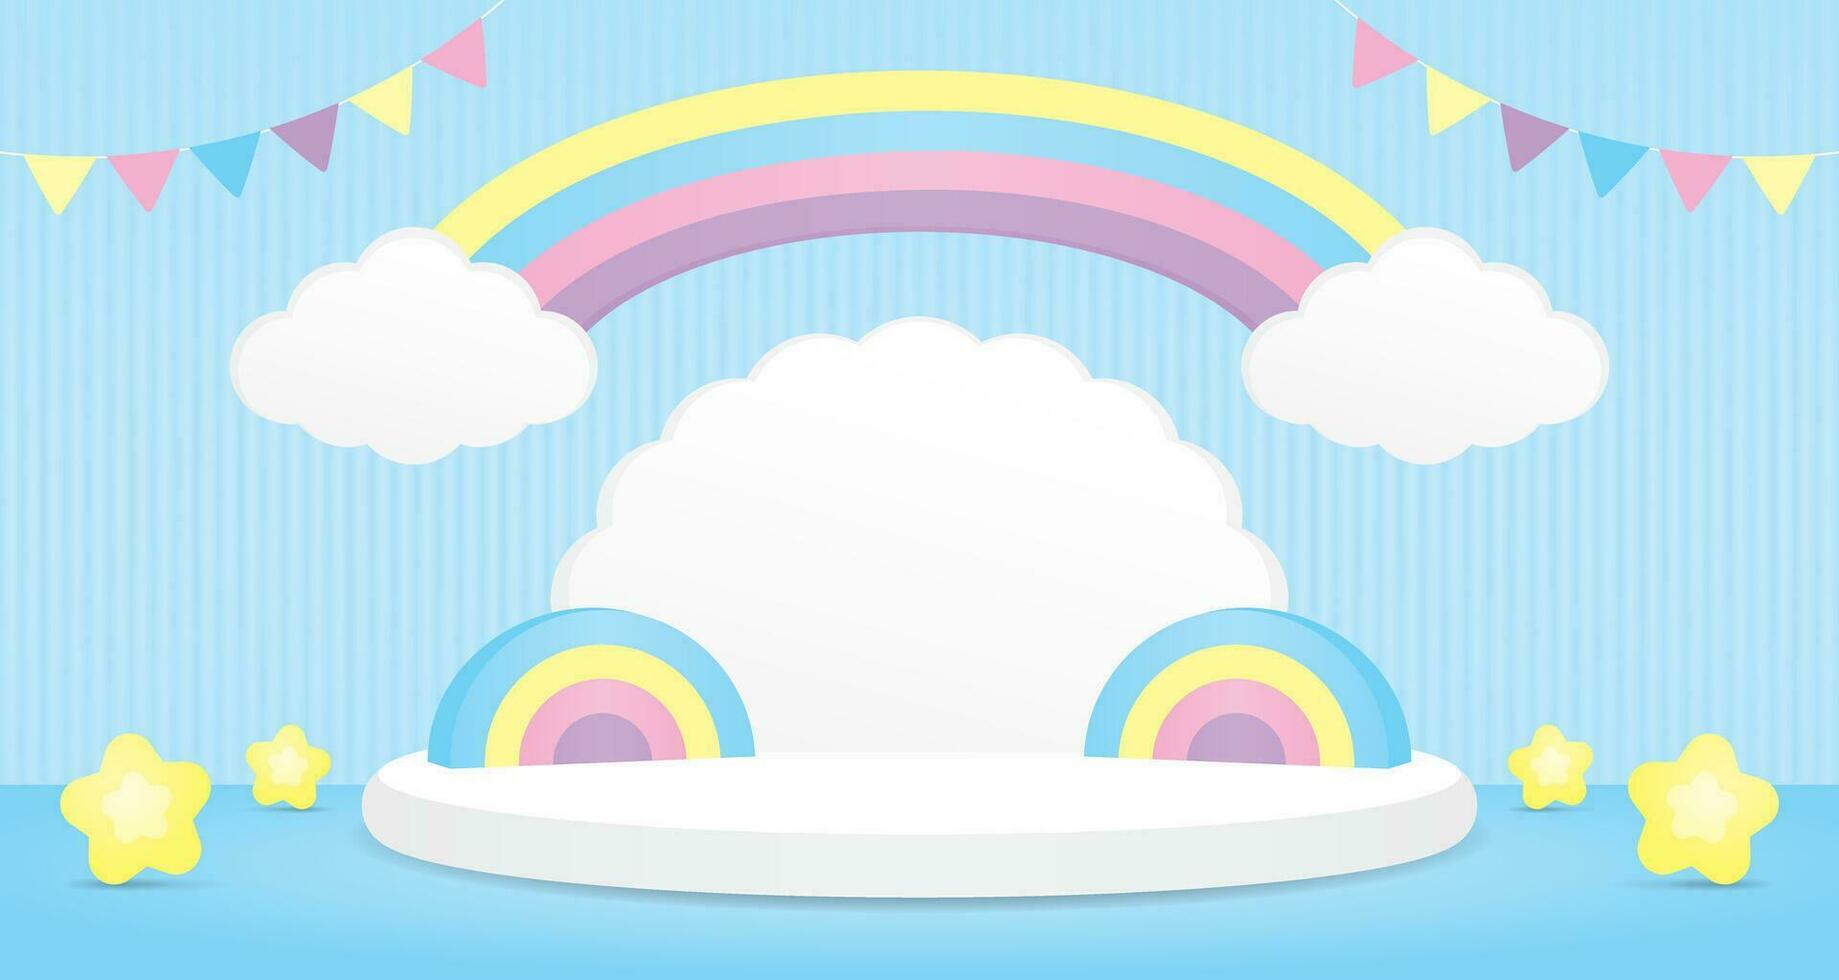 mignonne kawaii sucré pastel arc en ciel cambre avec nuage forme podium afficher 3d illustration vecteur scène pour en mettant objet